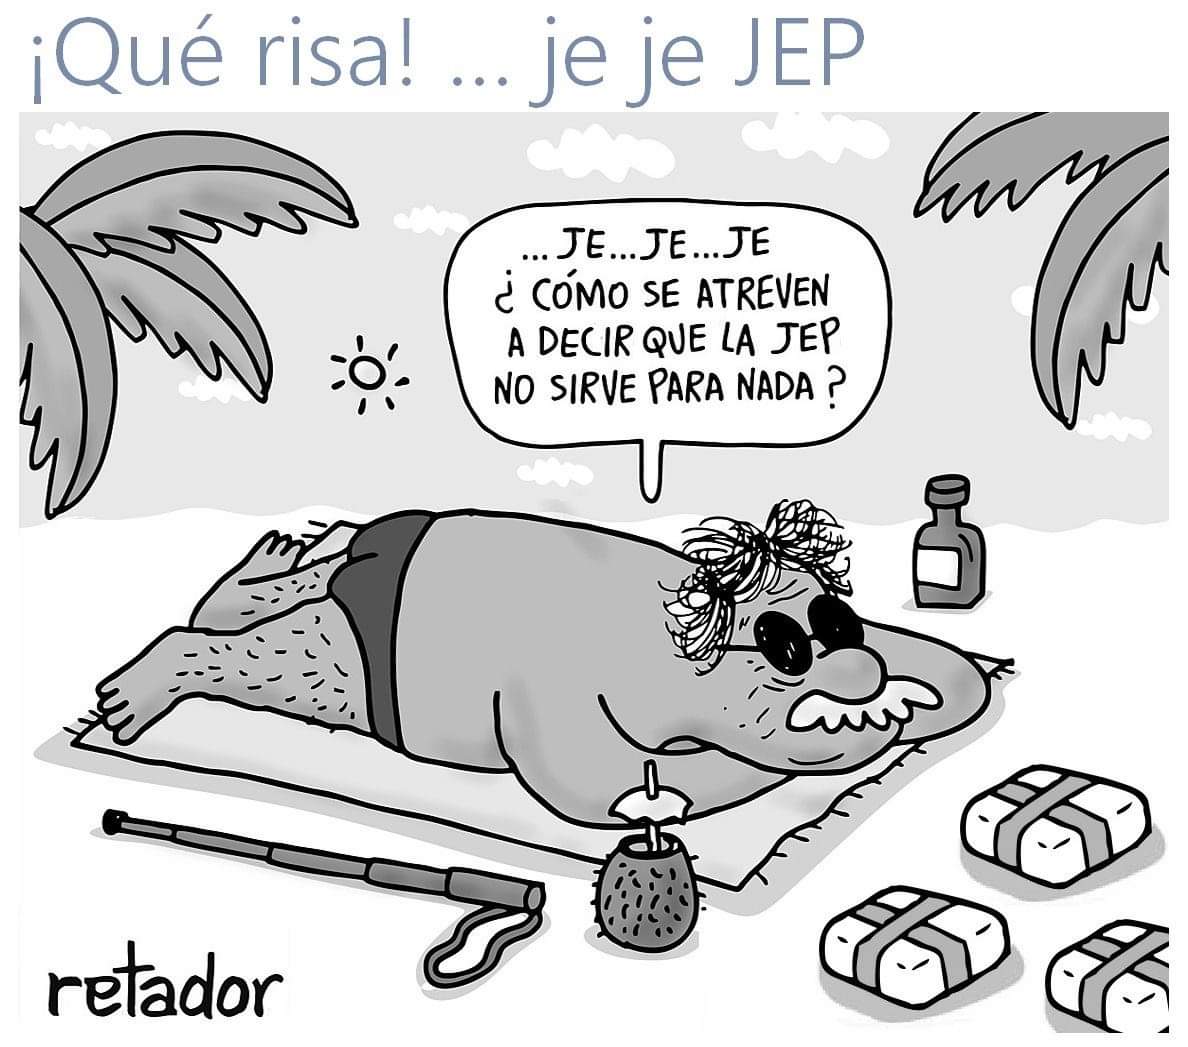 Jep-Retador